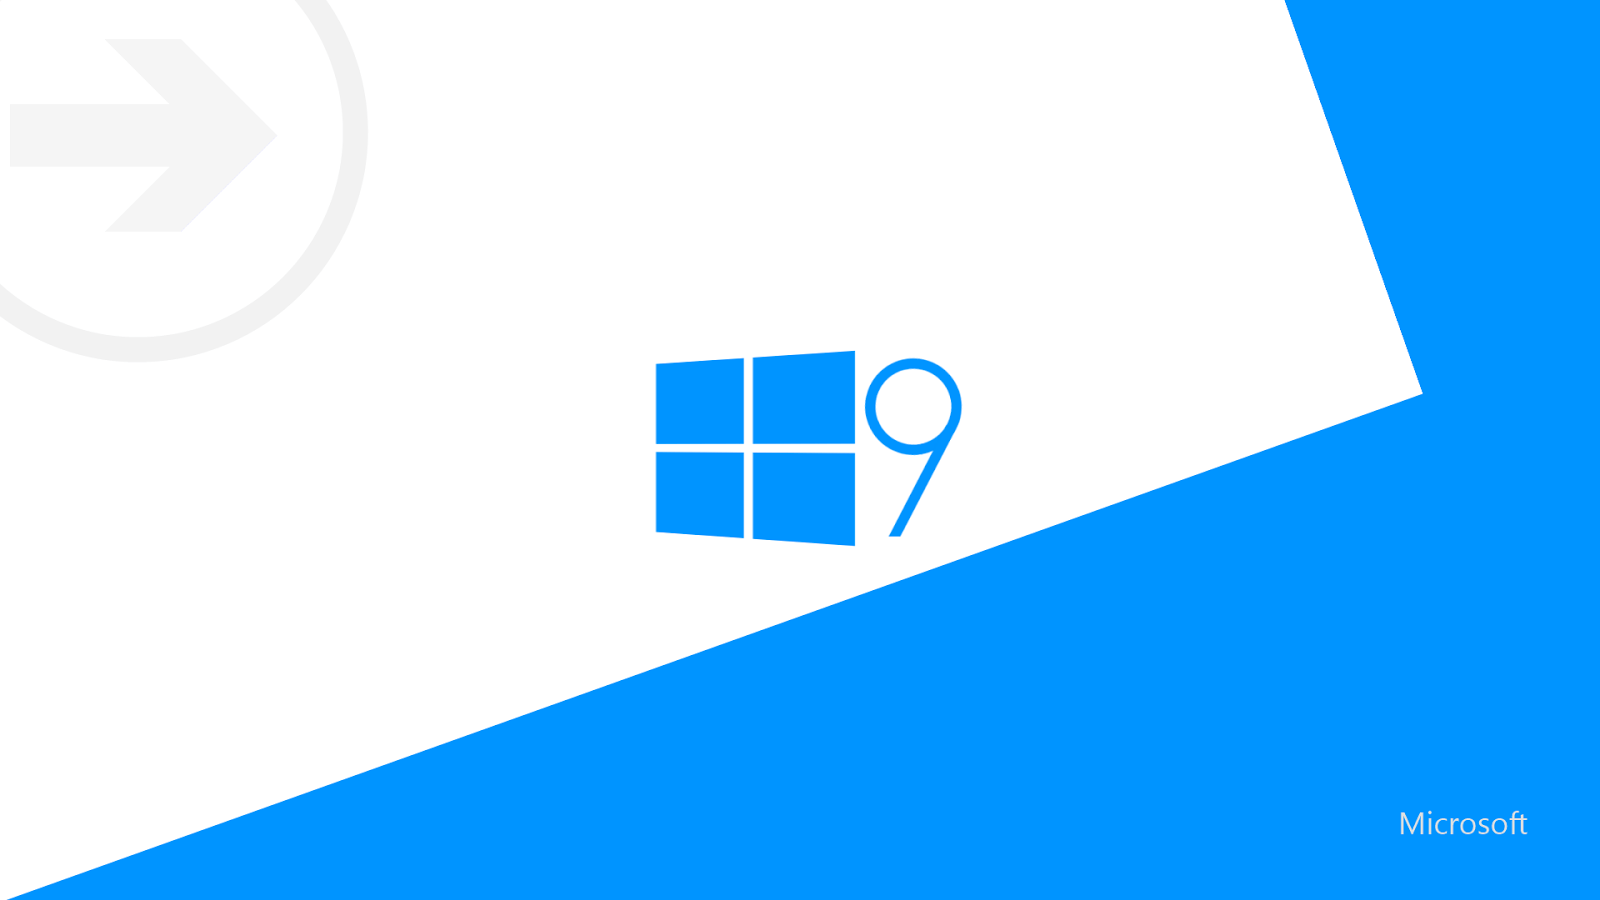 windows 9 wallpaper hd 3d for desktop